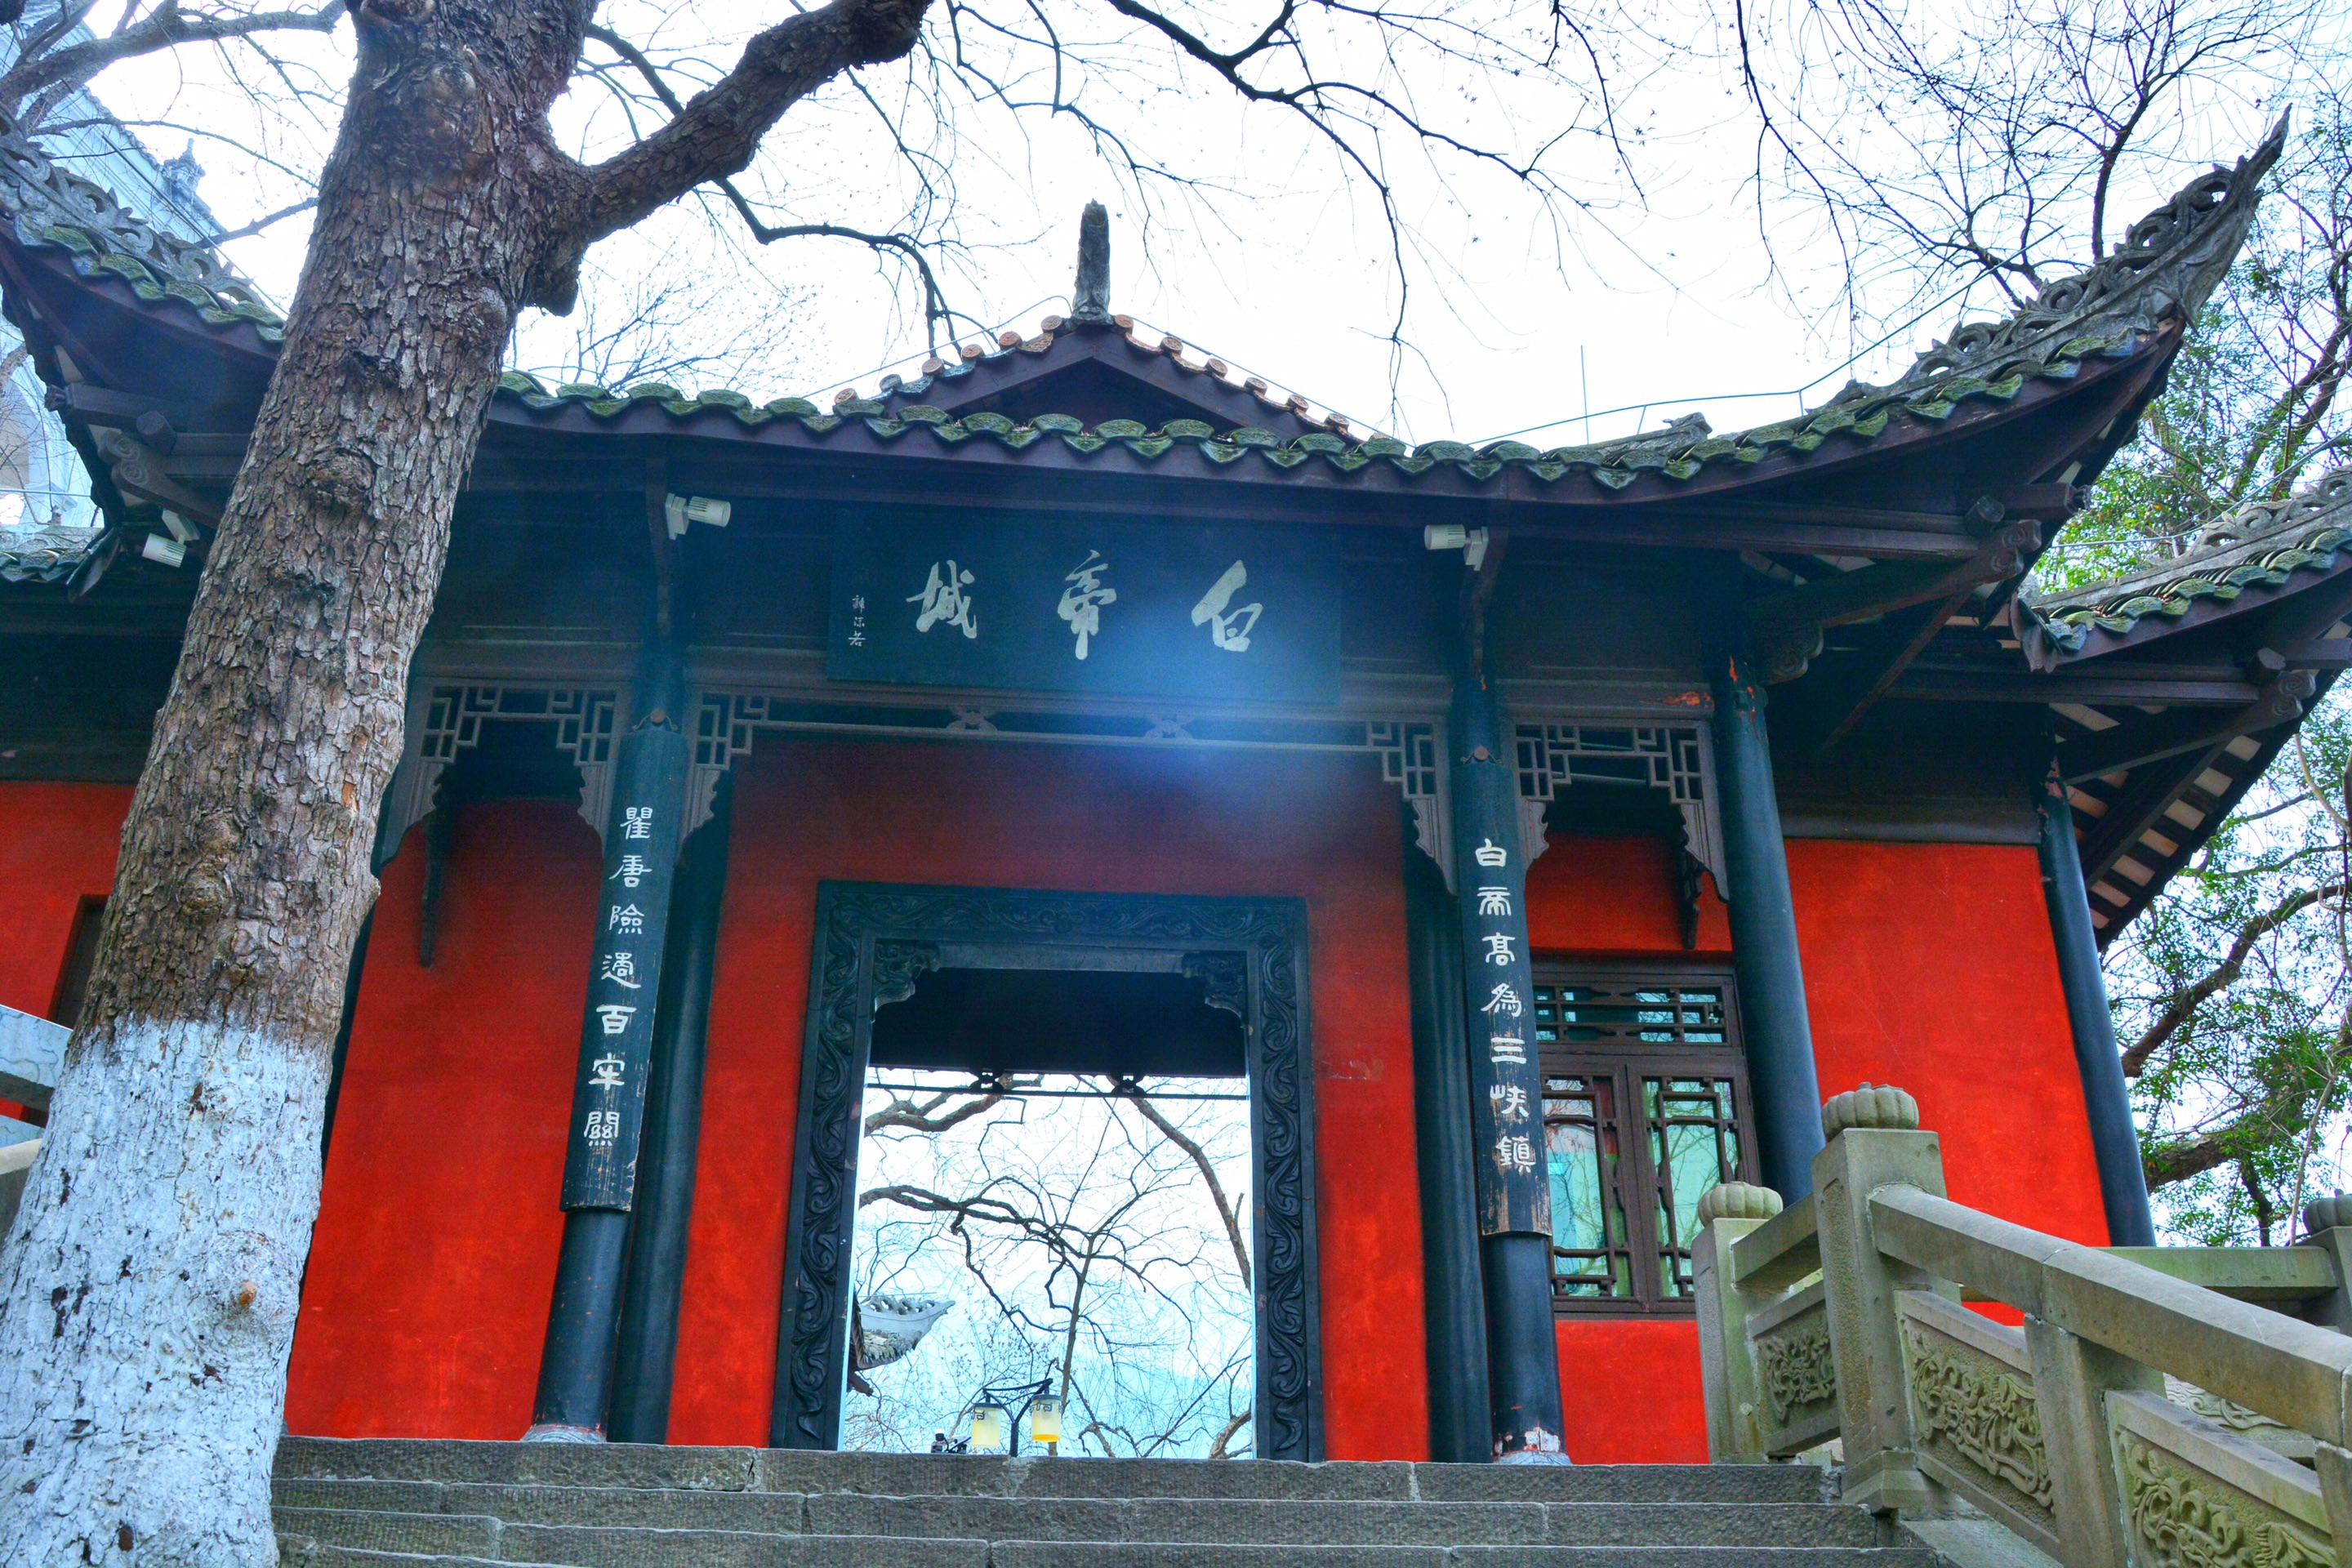 来白帝城，看长江三峡的西大门：夔门景区介绍白帝城景区位于_白帝城景区